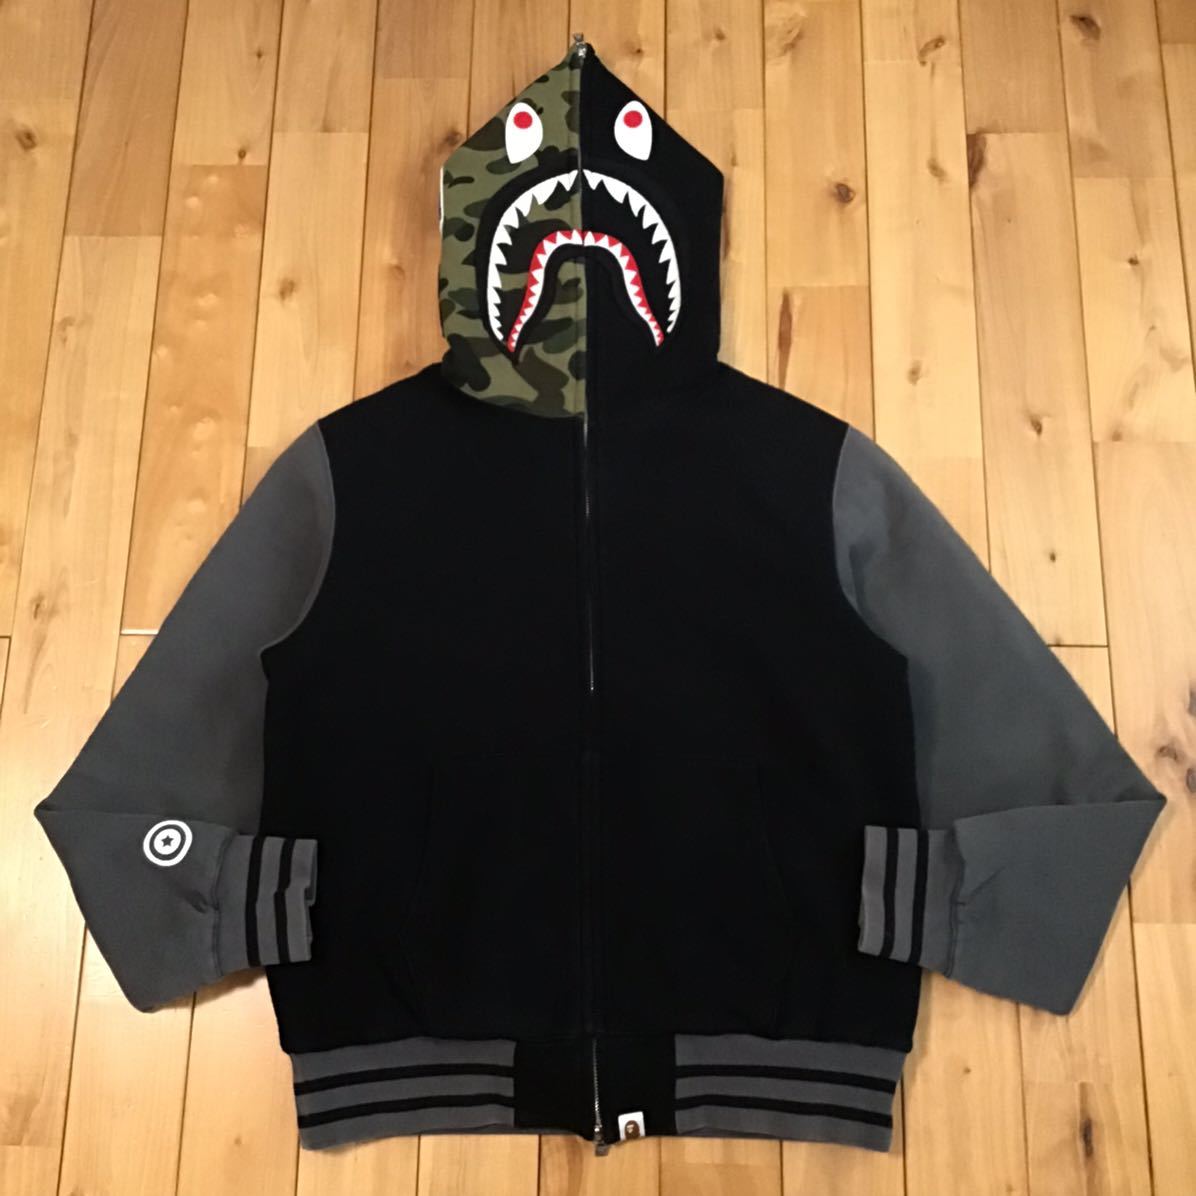 中綿キルティング シャーク パーカー Mサイズ 1st camo shark full zip hoodie jacket a bathing ape BAPE camo エイプ ベイプ WGM i7811